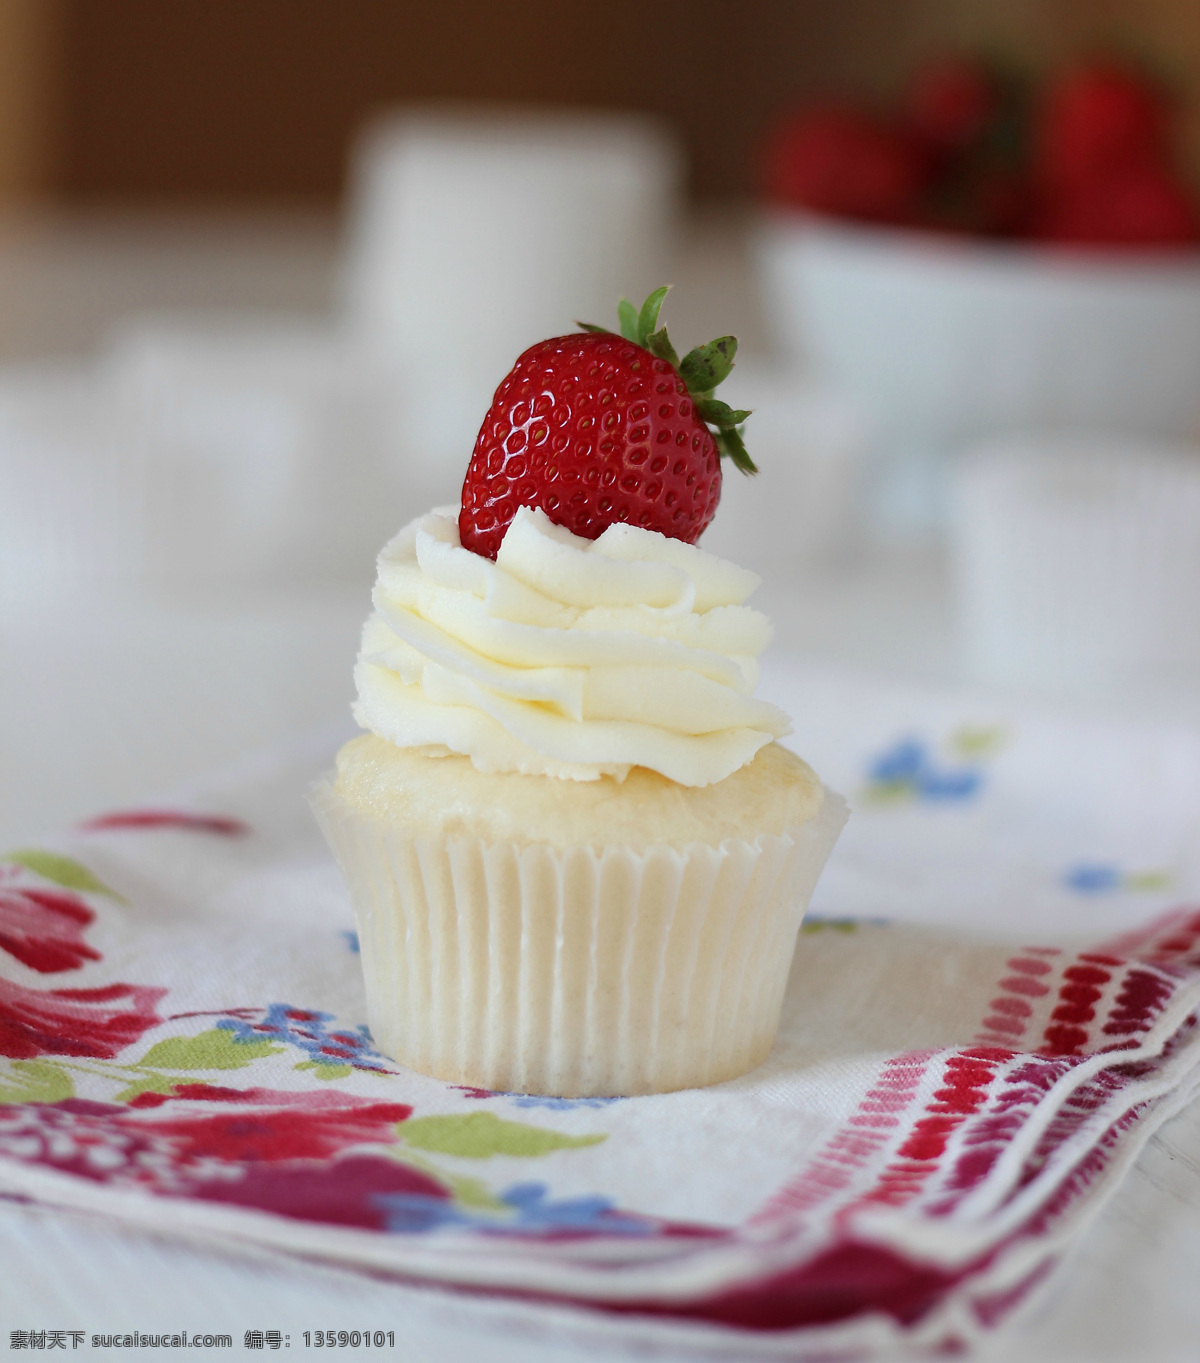 奶油草莓蛋糕 奶油 草莓 纸杯蛋糕 西餐美食 餐饮美食